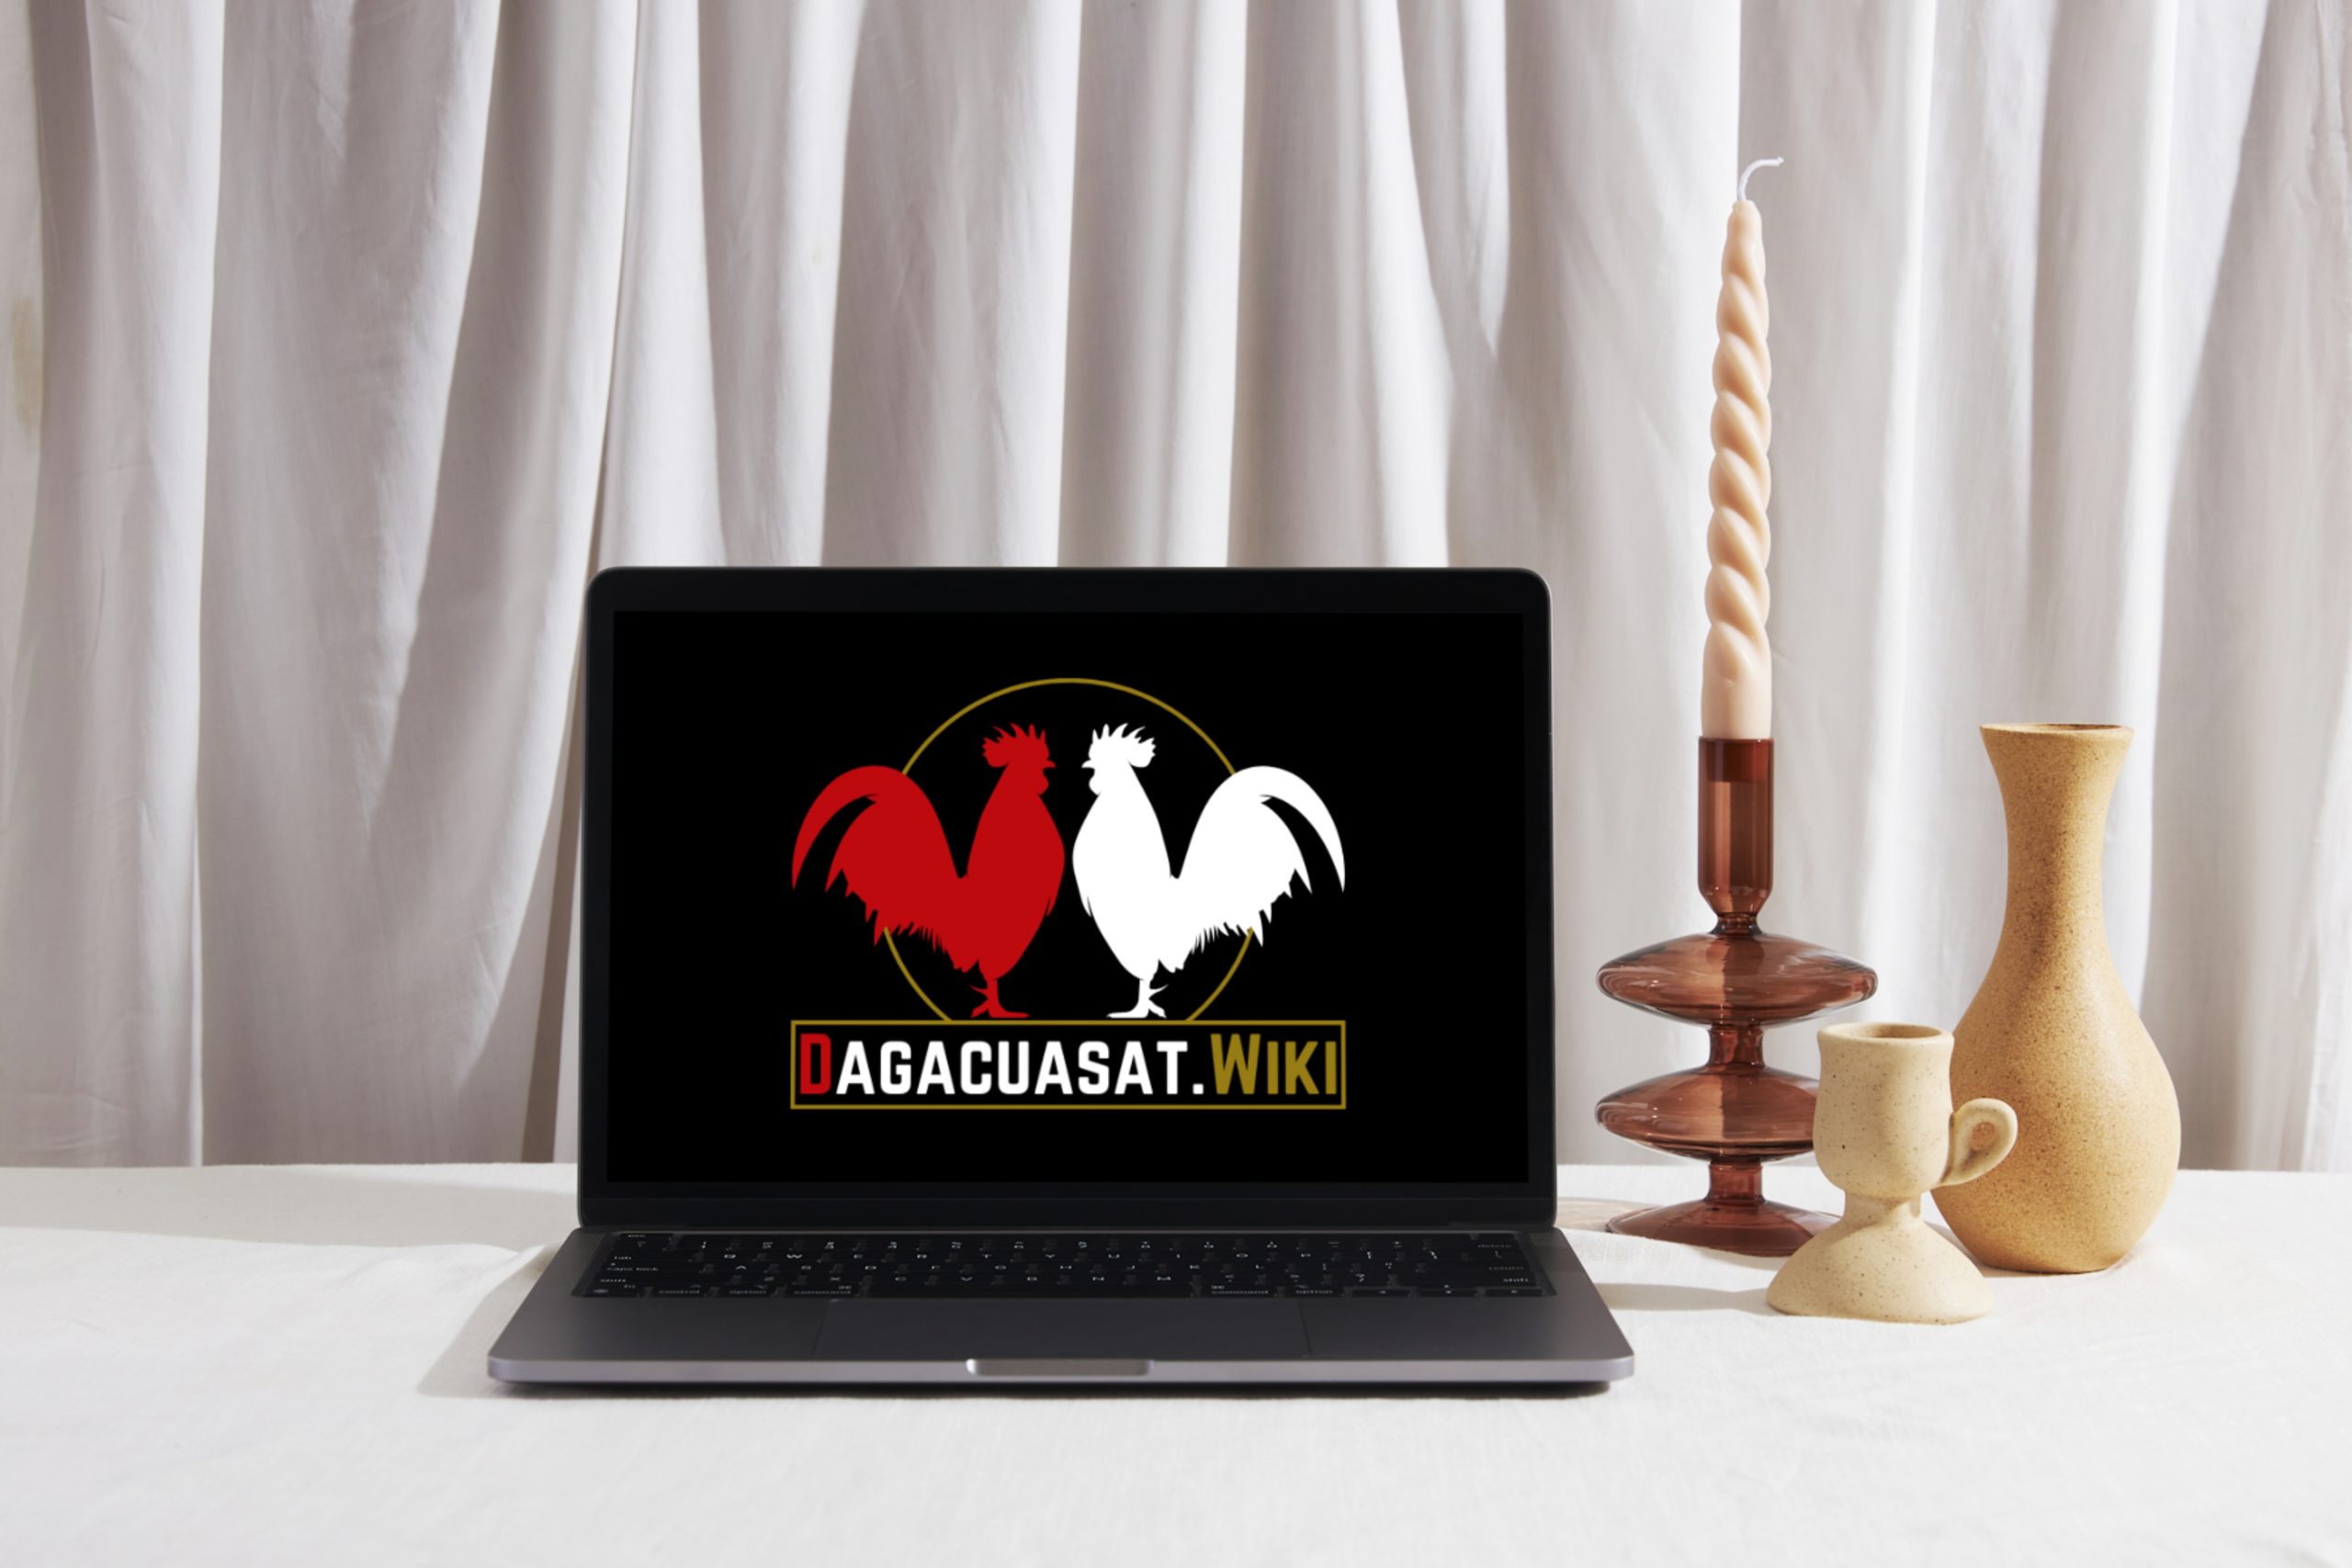 Logo Dagacuasat.Wiki trên màn hình máy tính xách tay